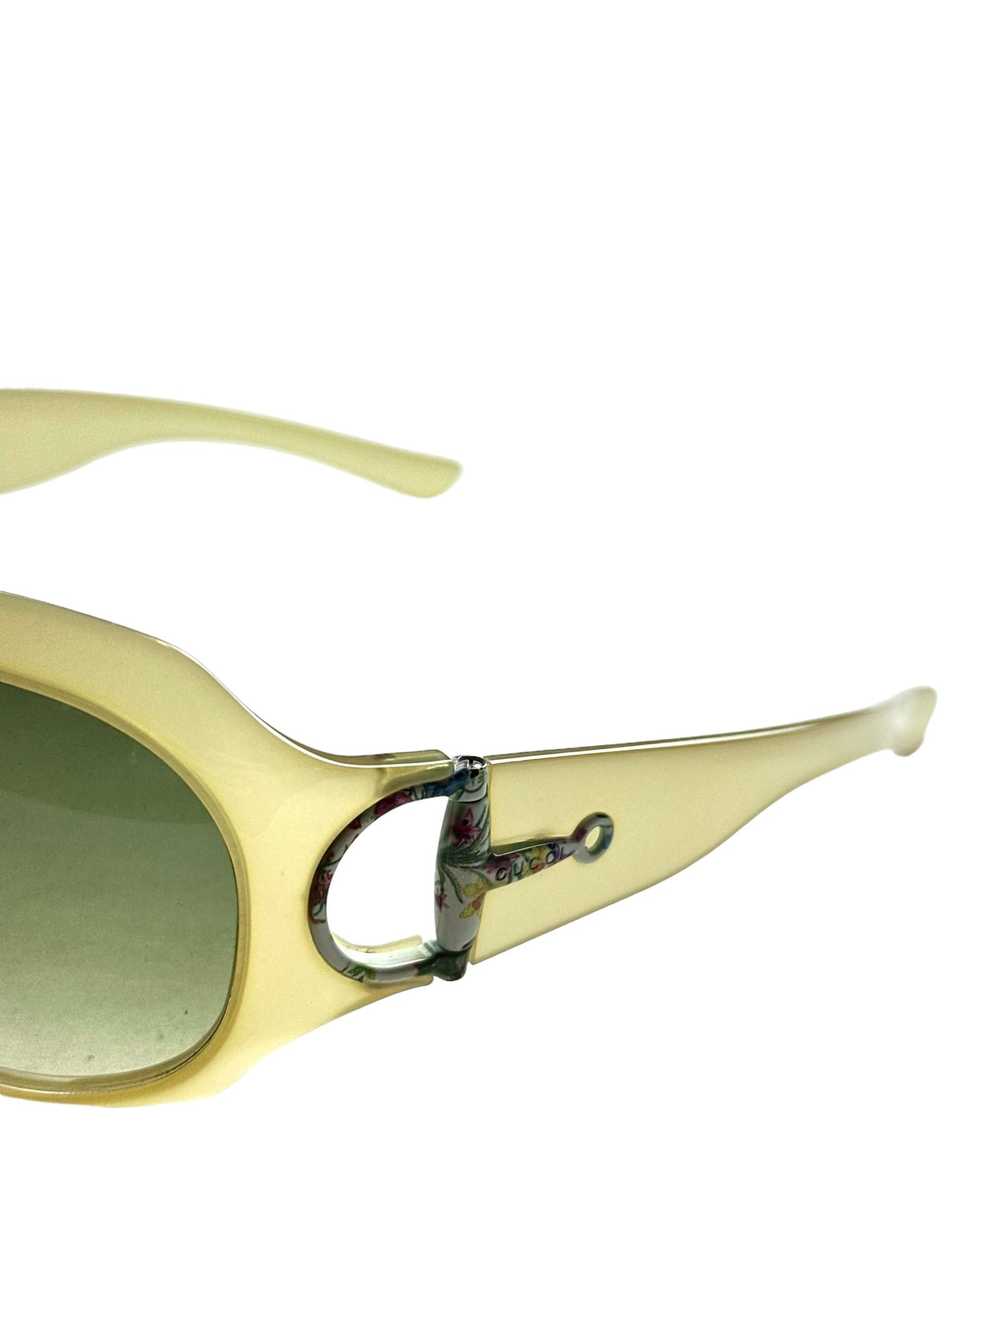 Gucci Gucci mask sunglasses - image 6